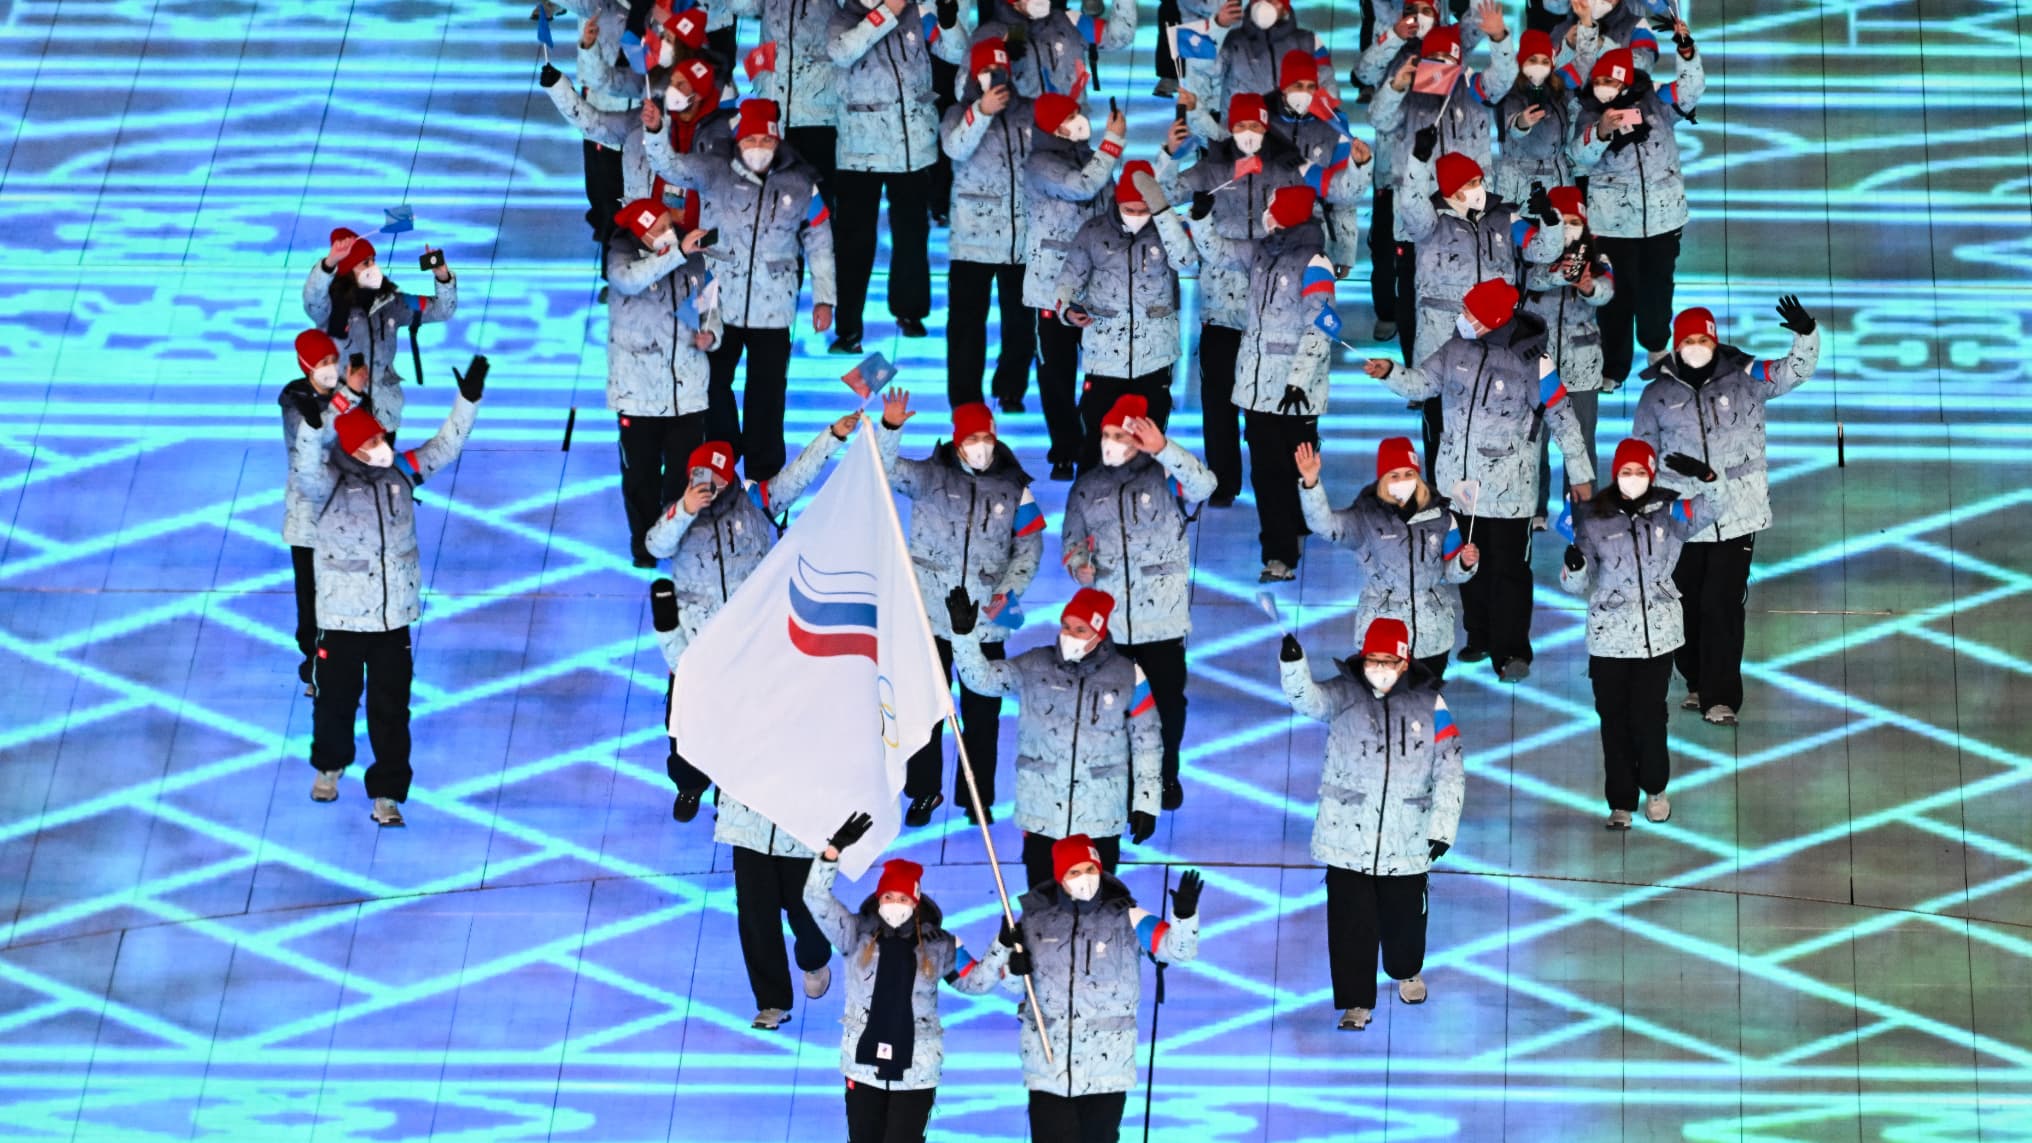 La Russie veut que son drapeau flotte aux Jeux olympiques de Tokyo